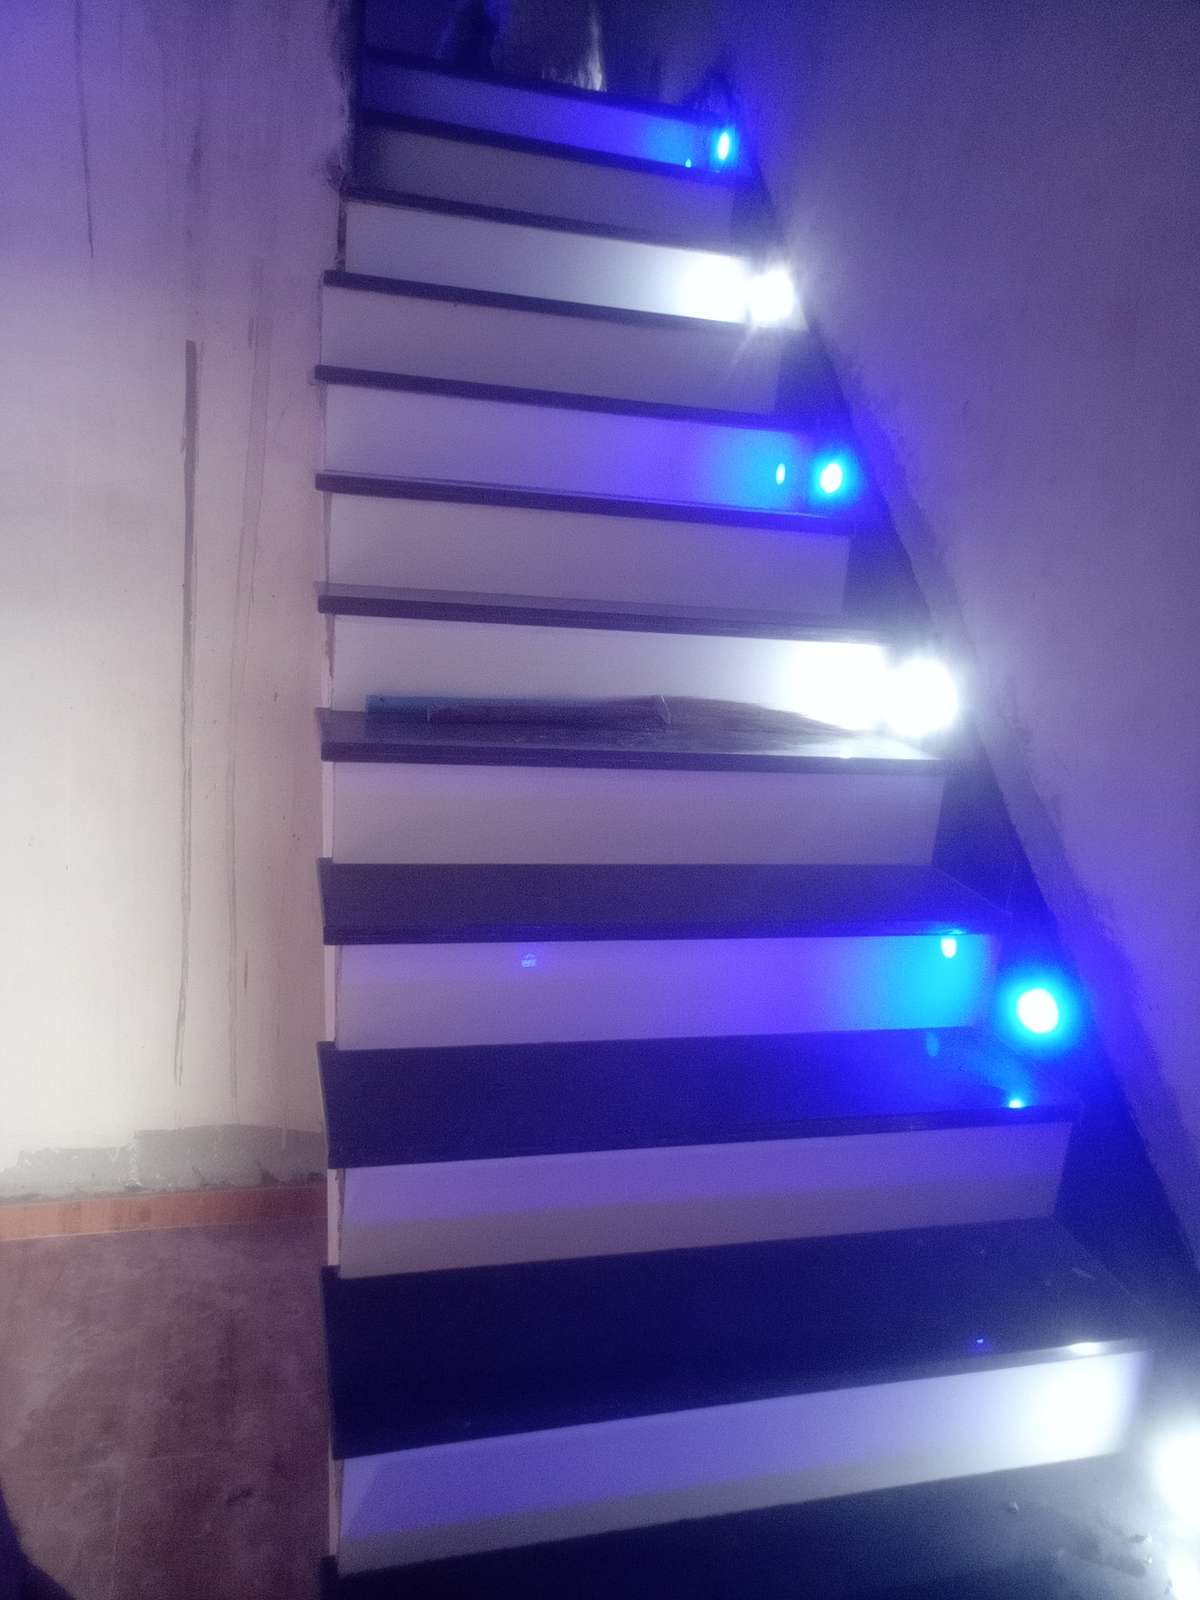 Staircase, Lighting Designs by Waste Management Joni Jangir, Jaipur | Kolo